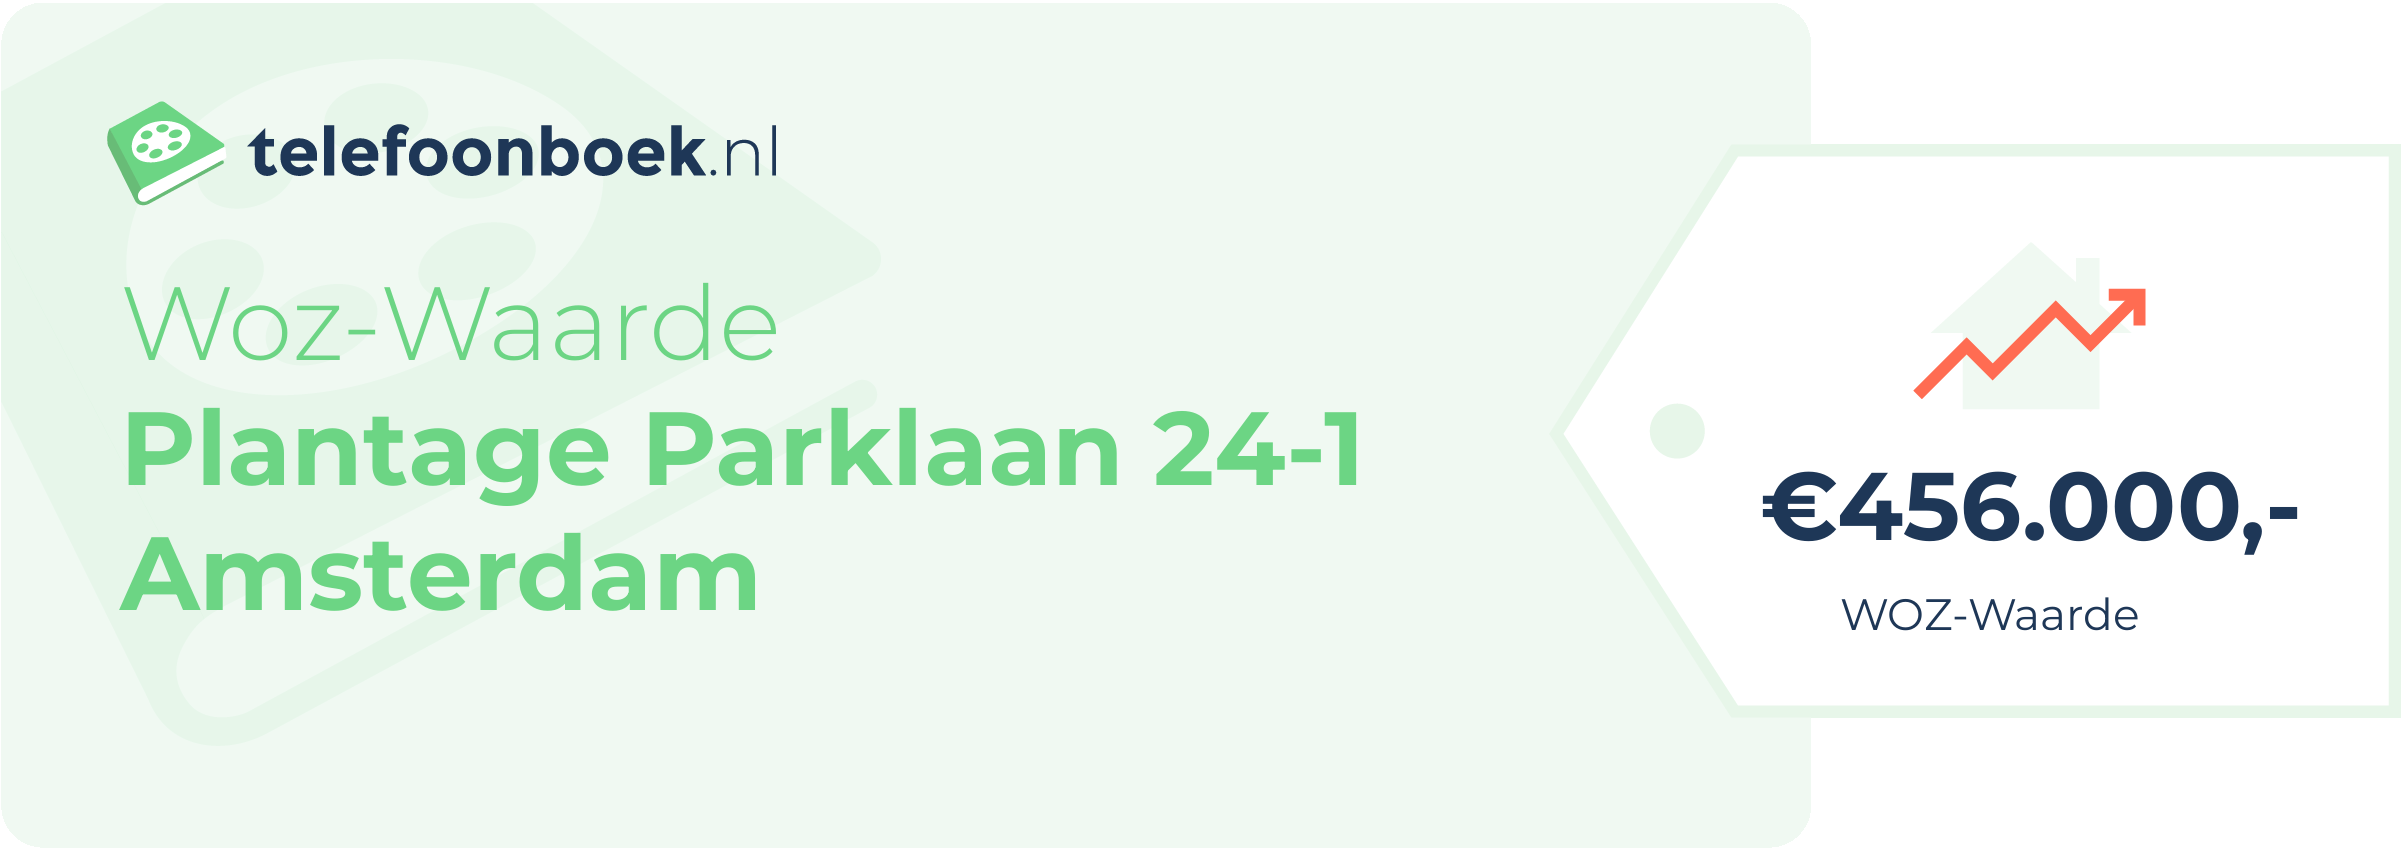 WOZ-waarde Plantage Parklaan 24-1 Amsterdam